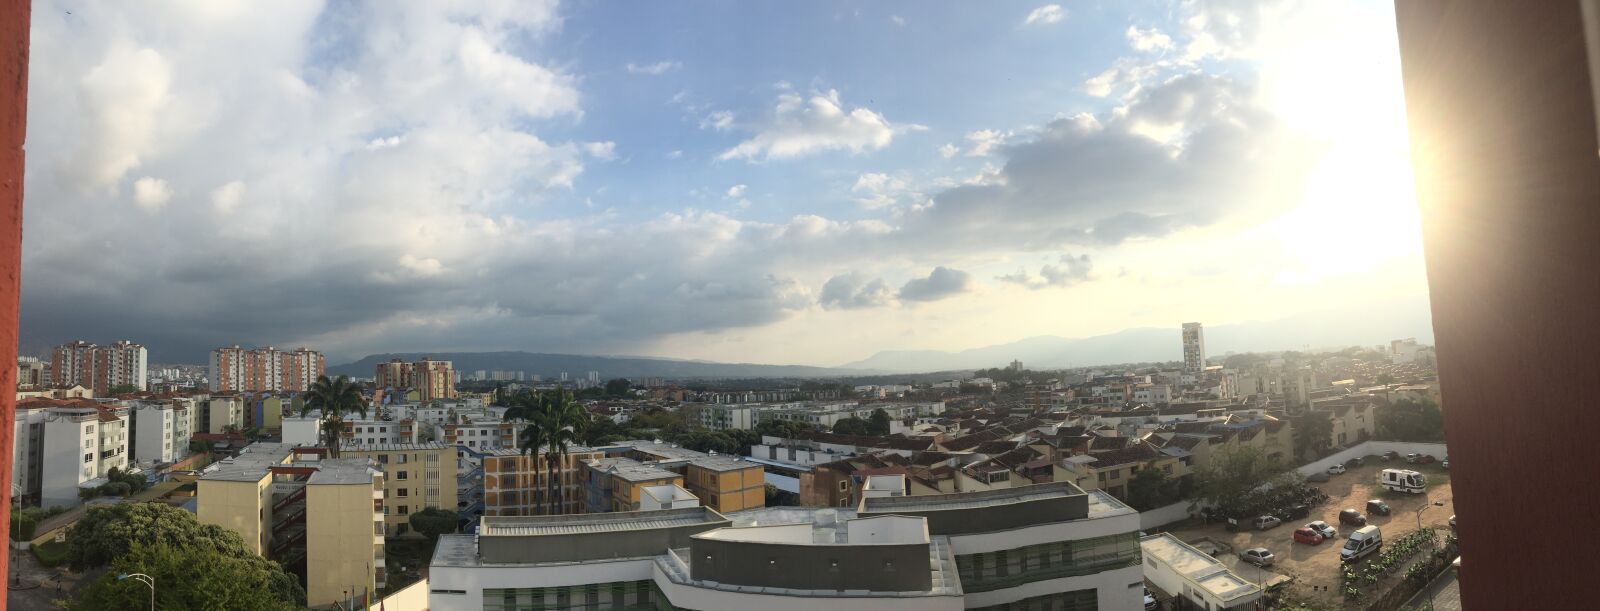 Apple iPhone 6 sample photo. Bucaramanga, panoramic, sky photography